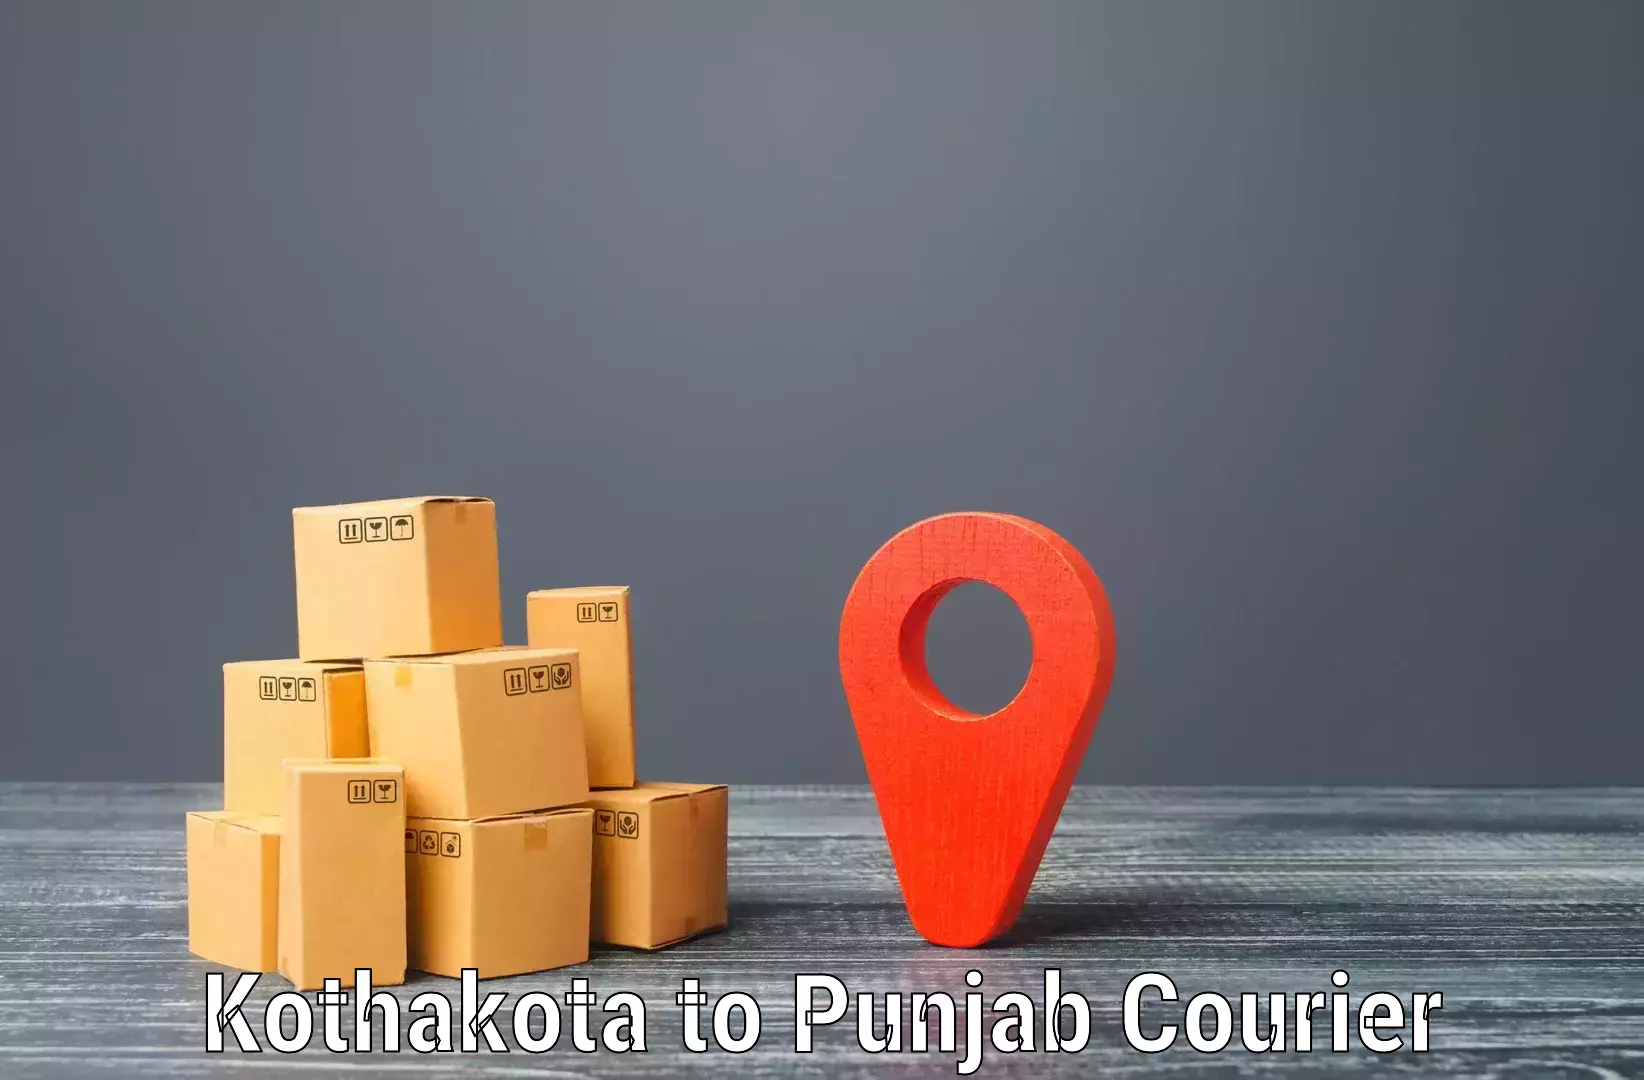 Reliable delivery network Kothakota to Moga